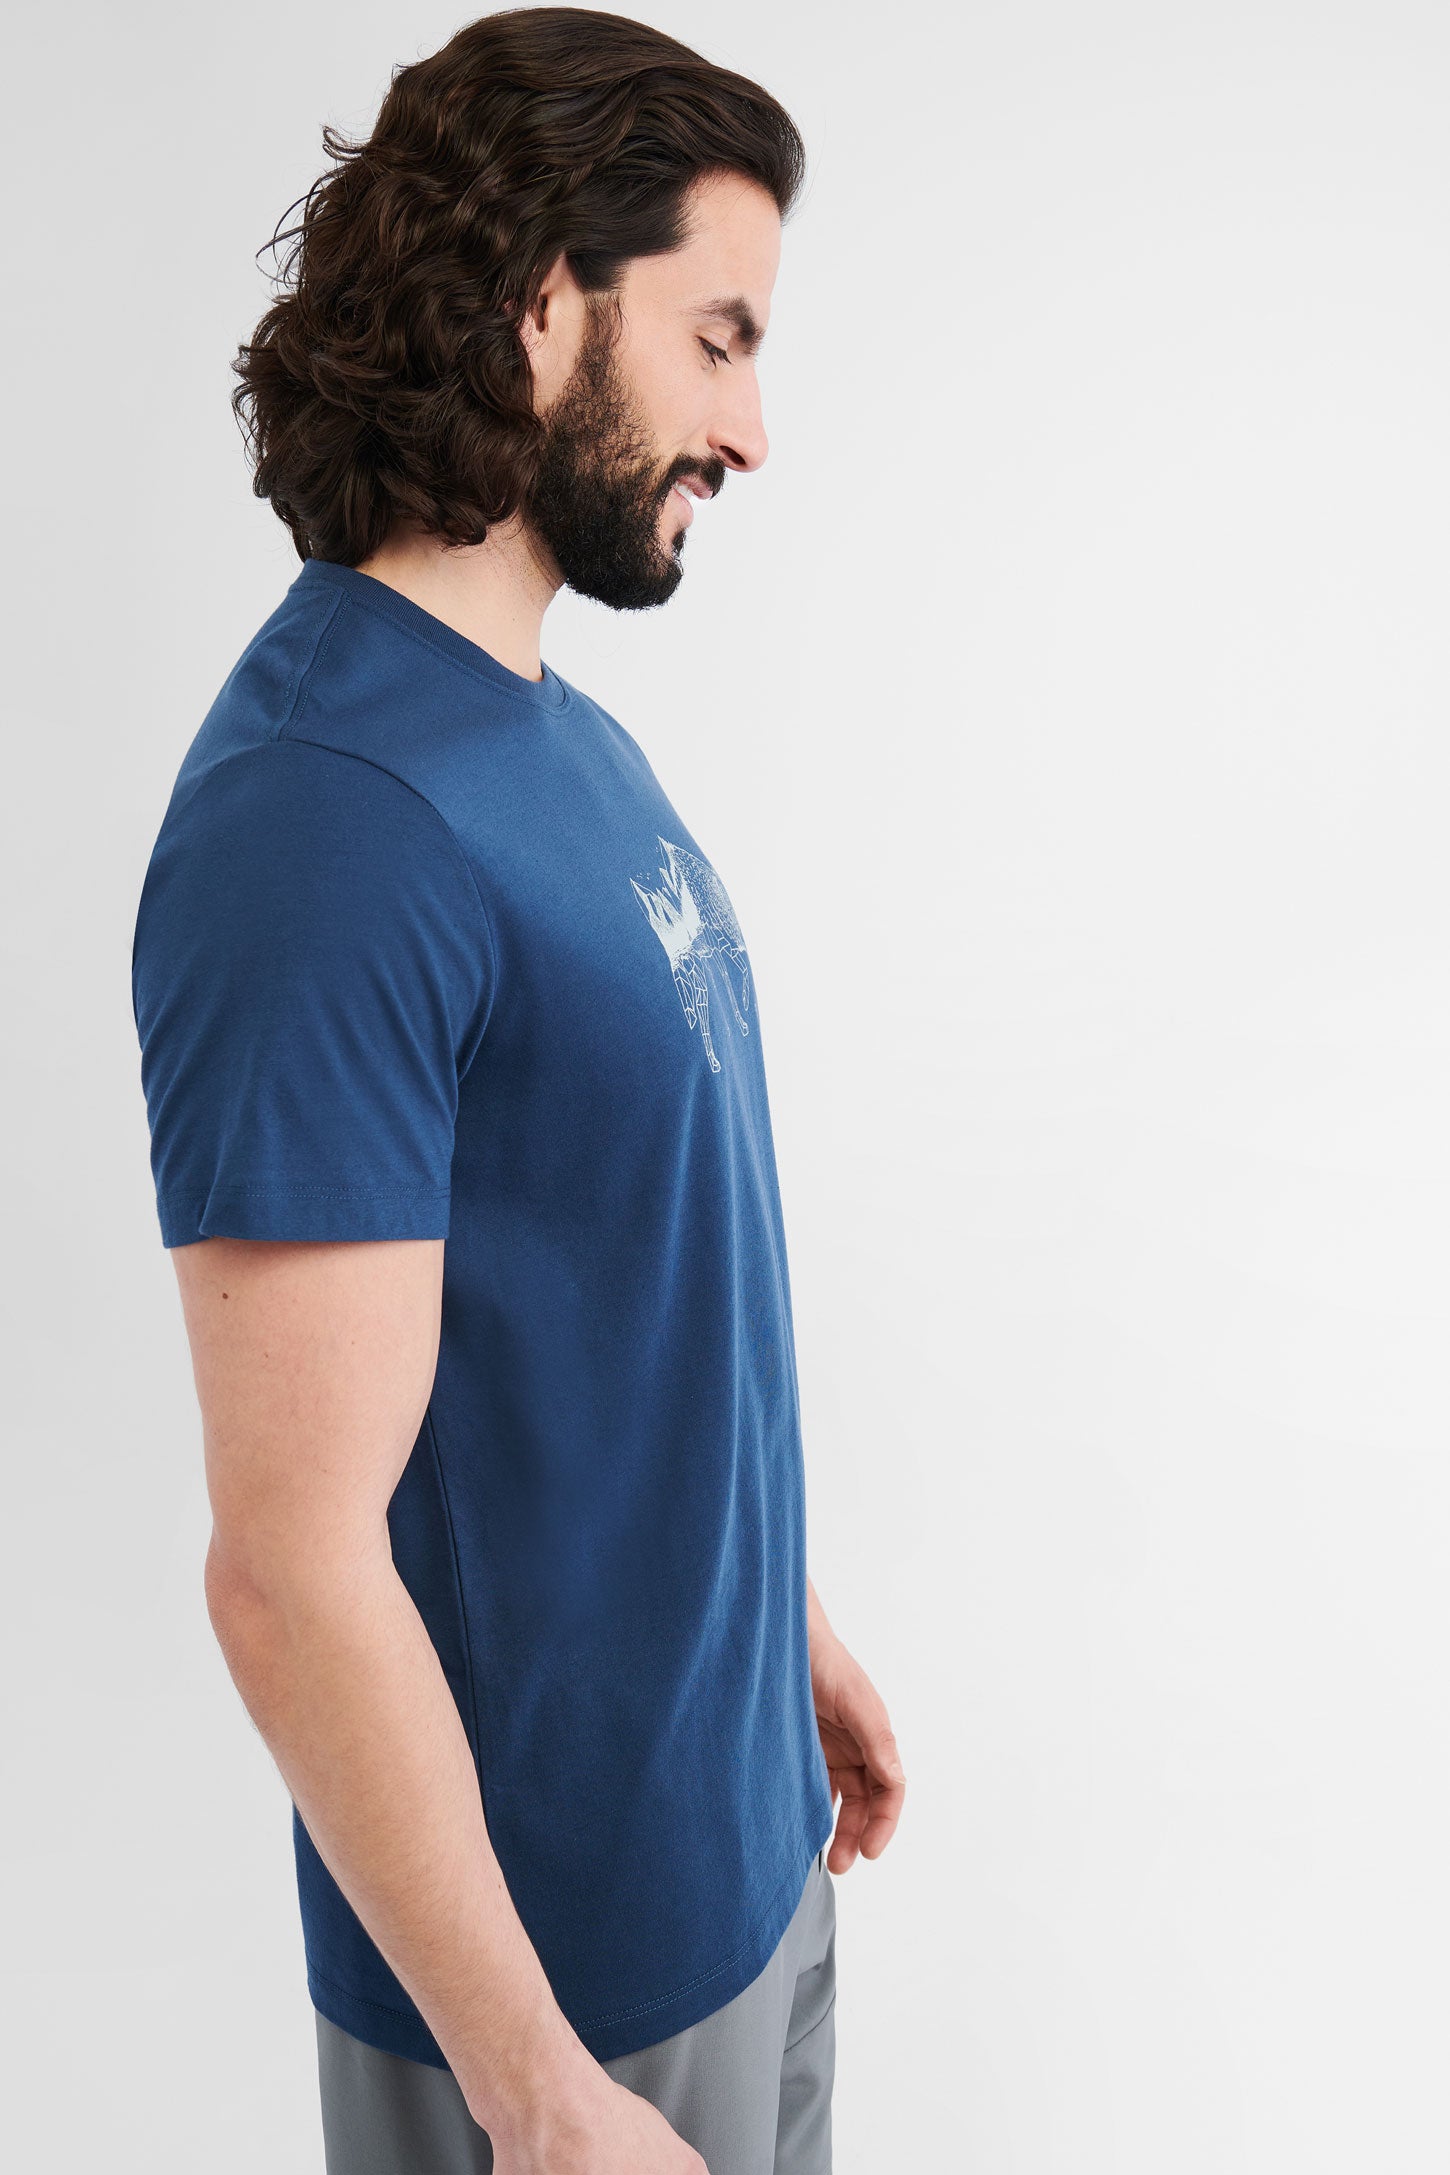 T-shirt polyester recyclé et coton bio BM, 2/50$ - Homme && MARIN